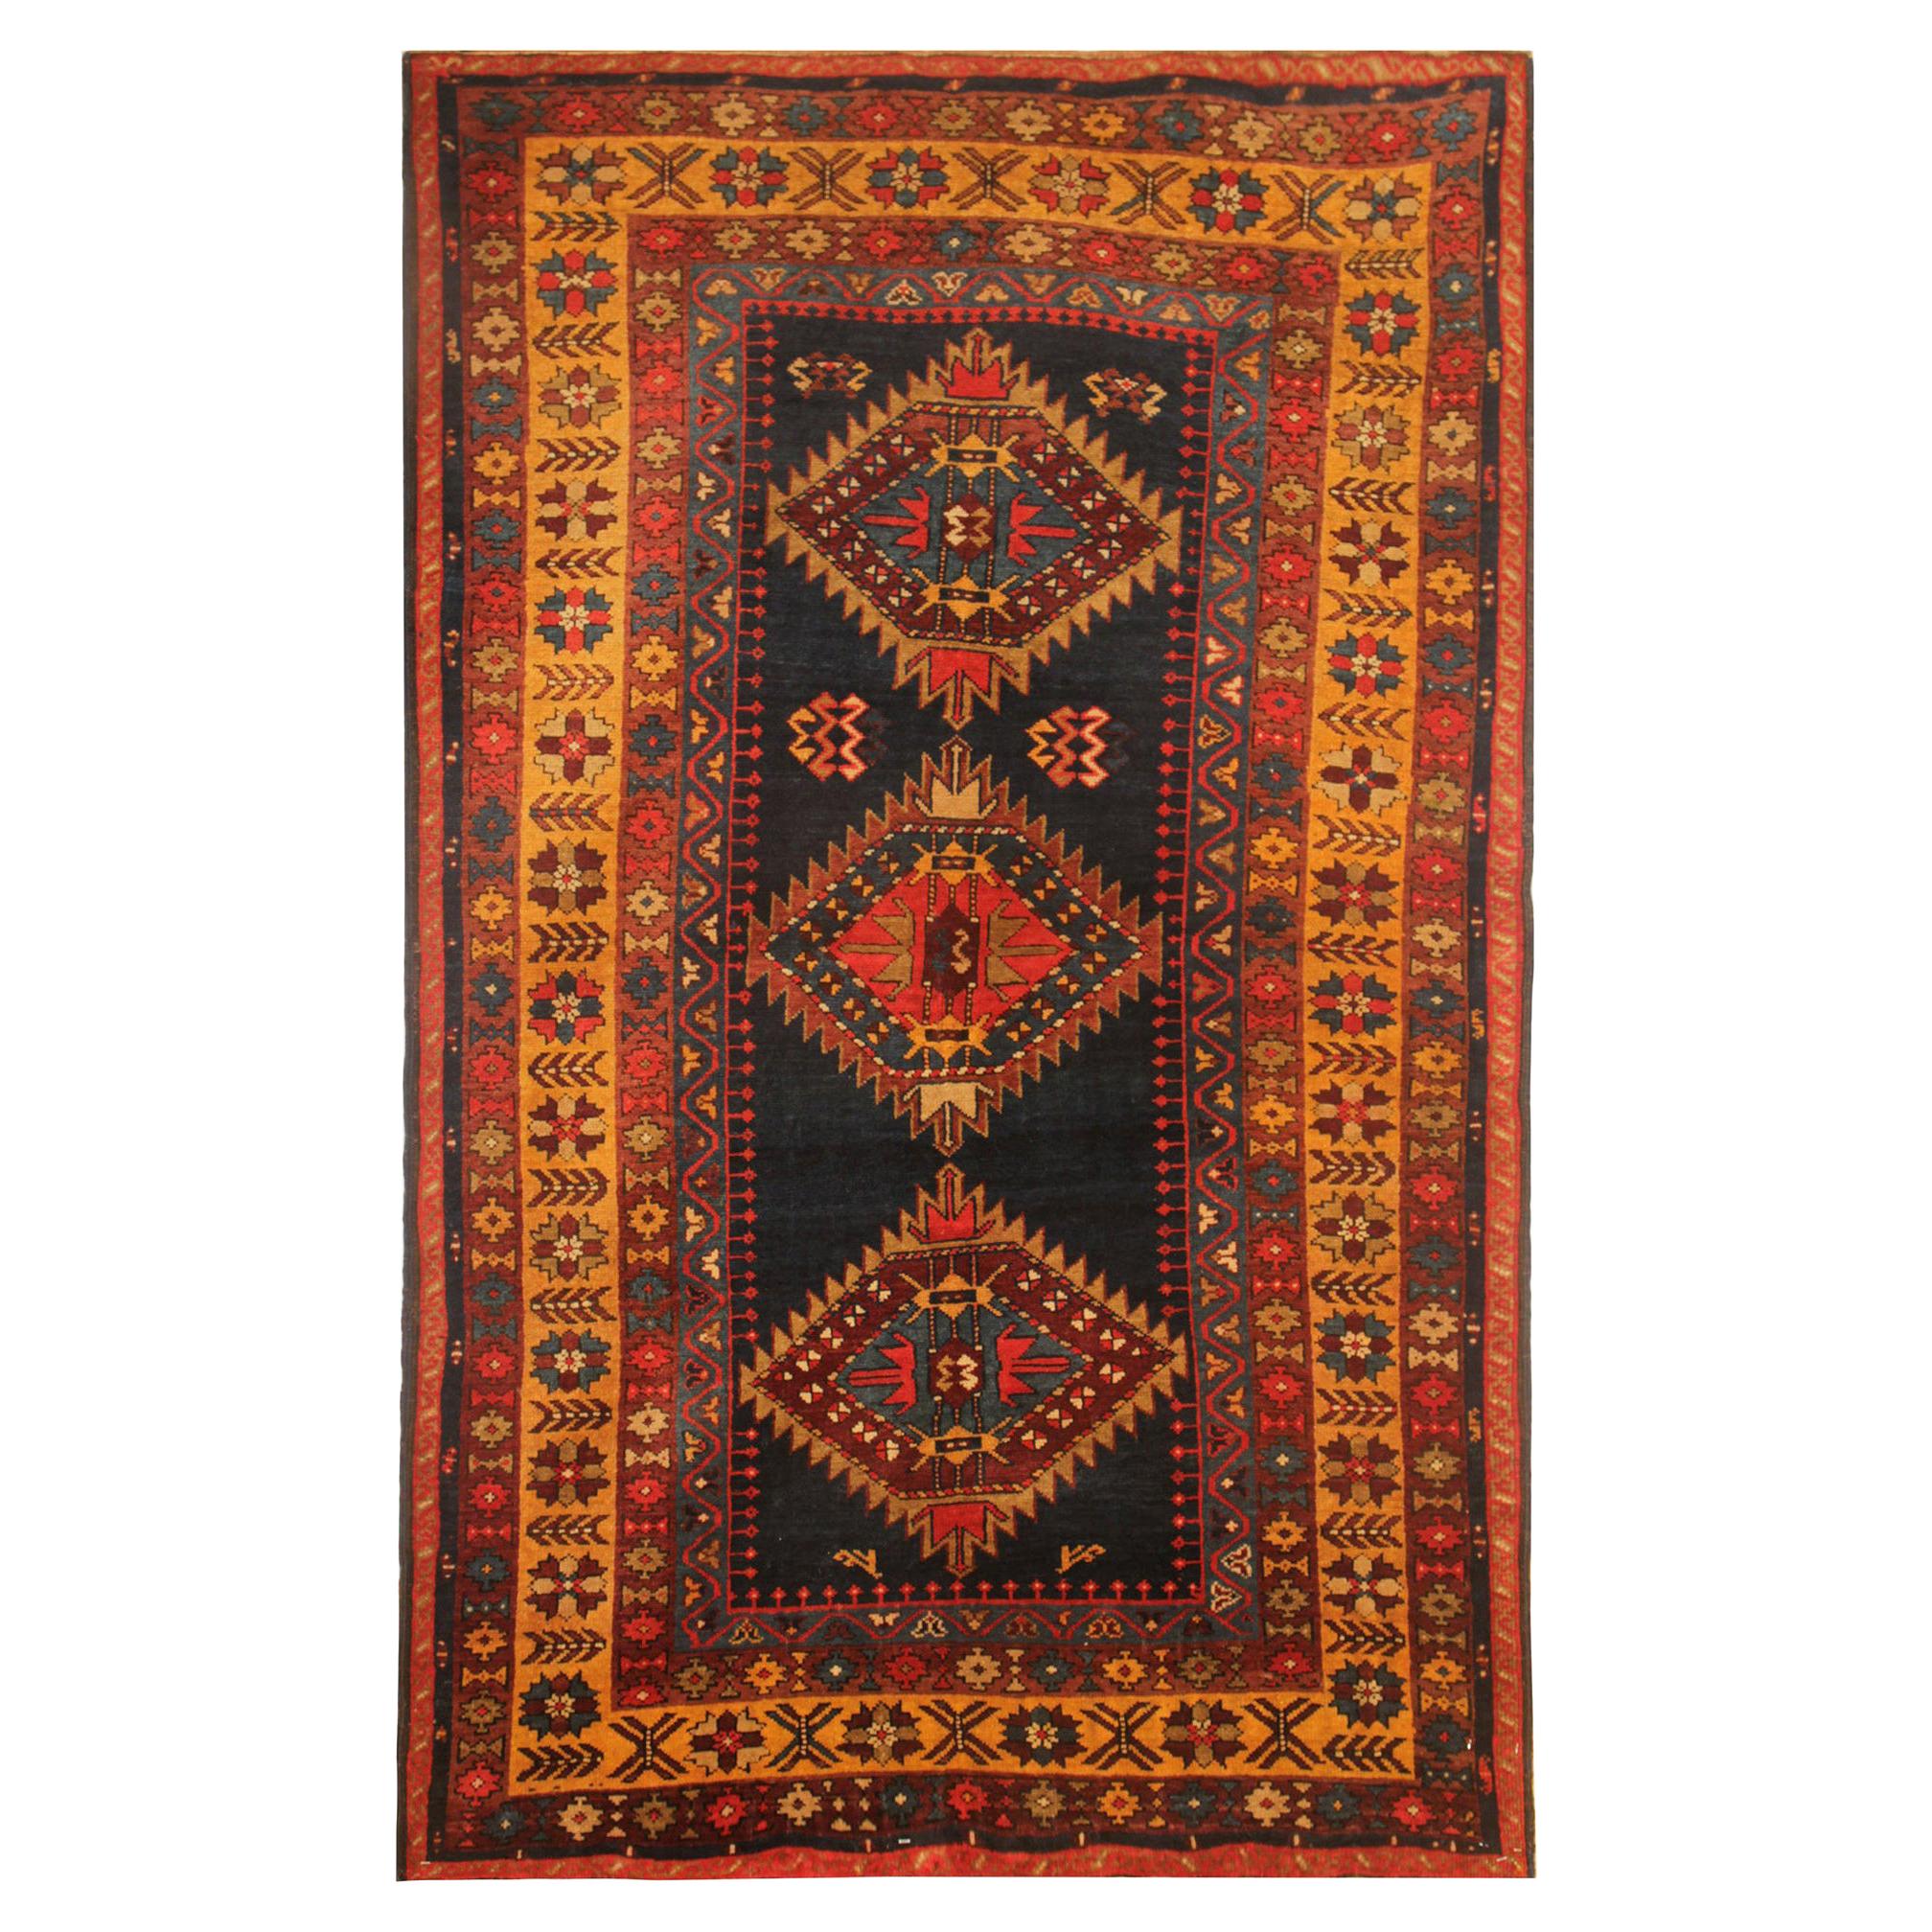 Seltener antiker kaukasischer orientalischer Teppich, handgefertigter Teppich aus der Kasachischen Region